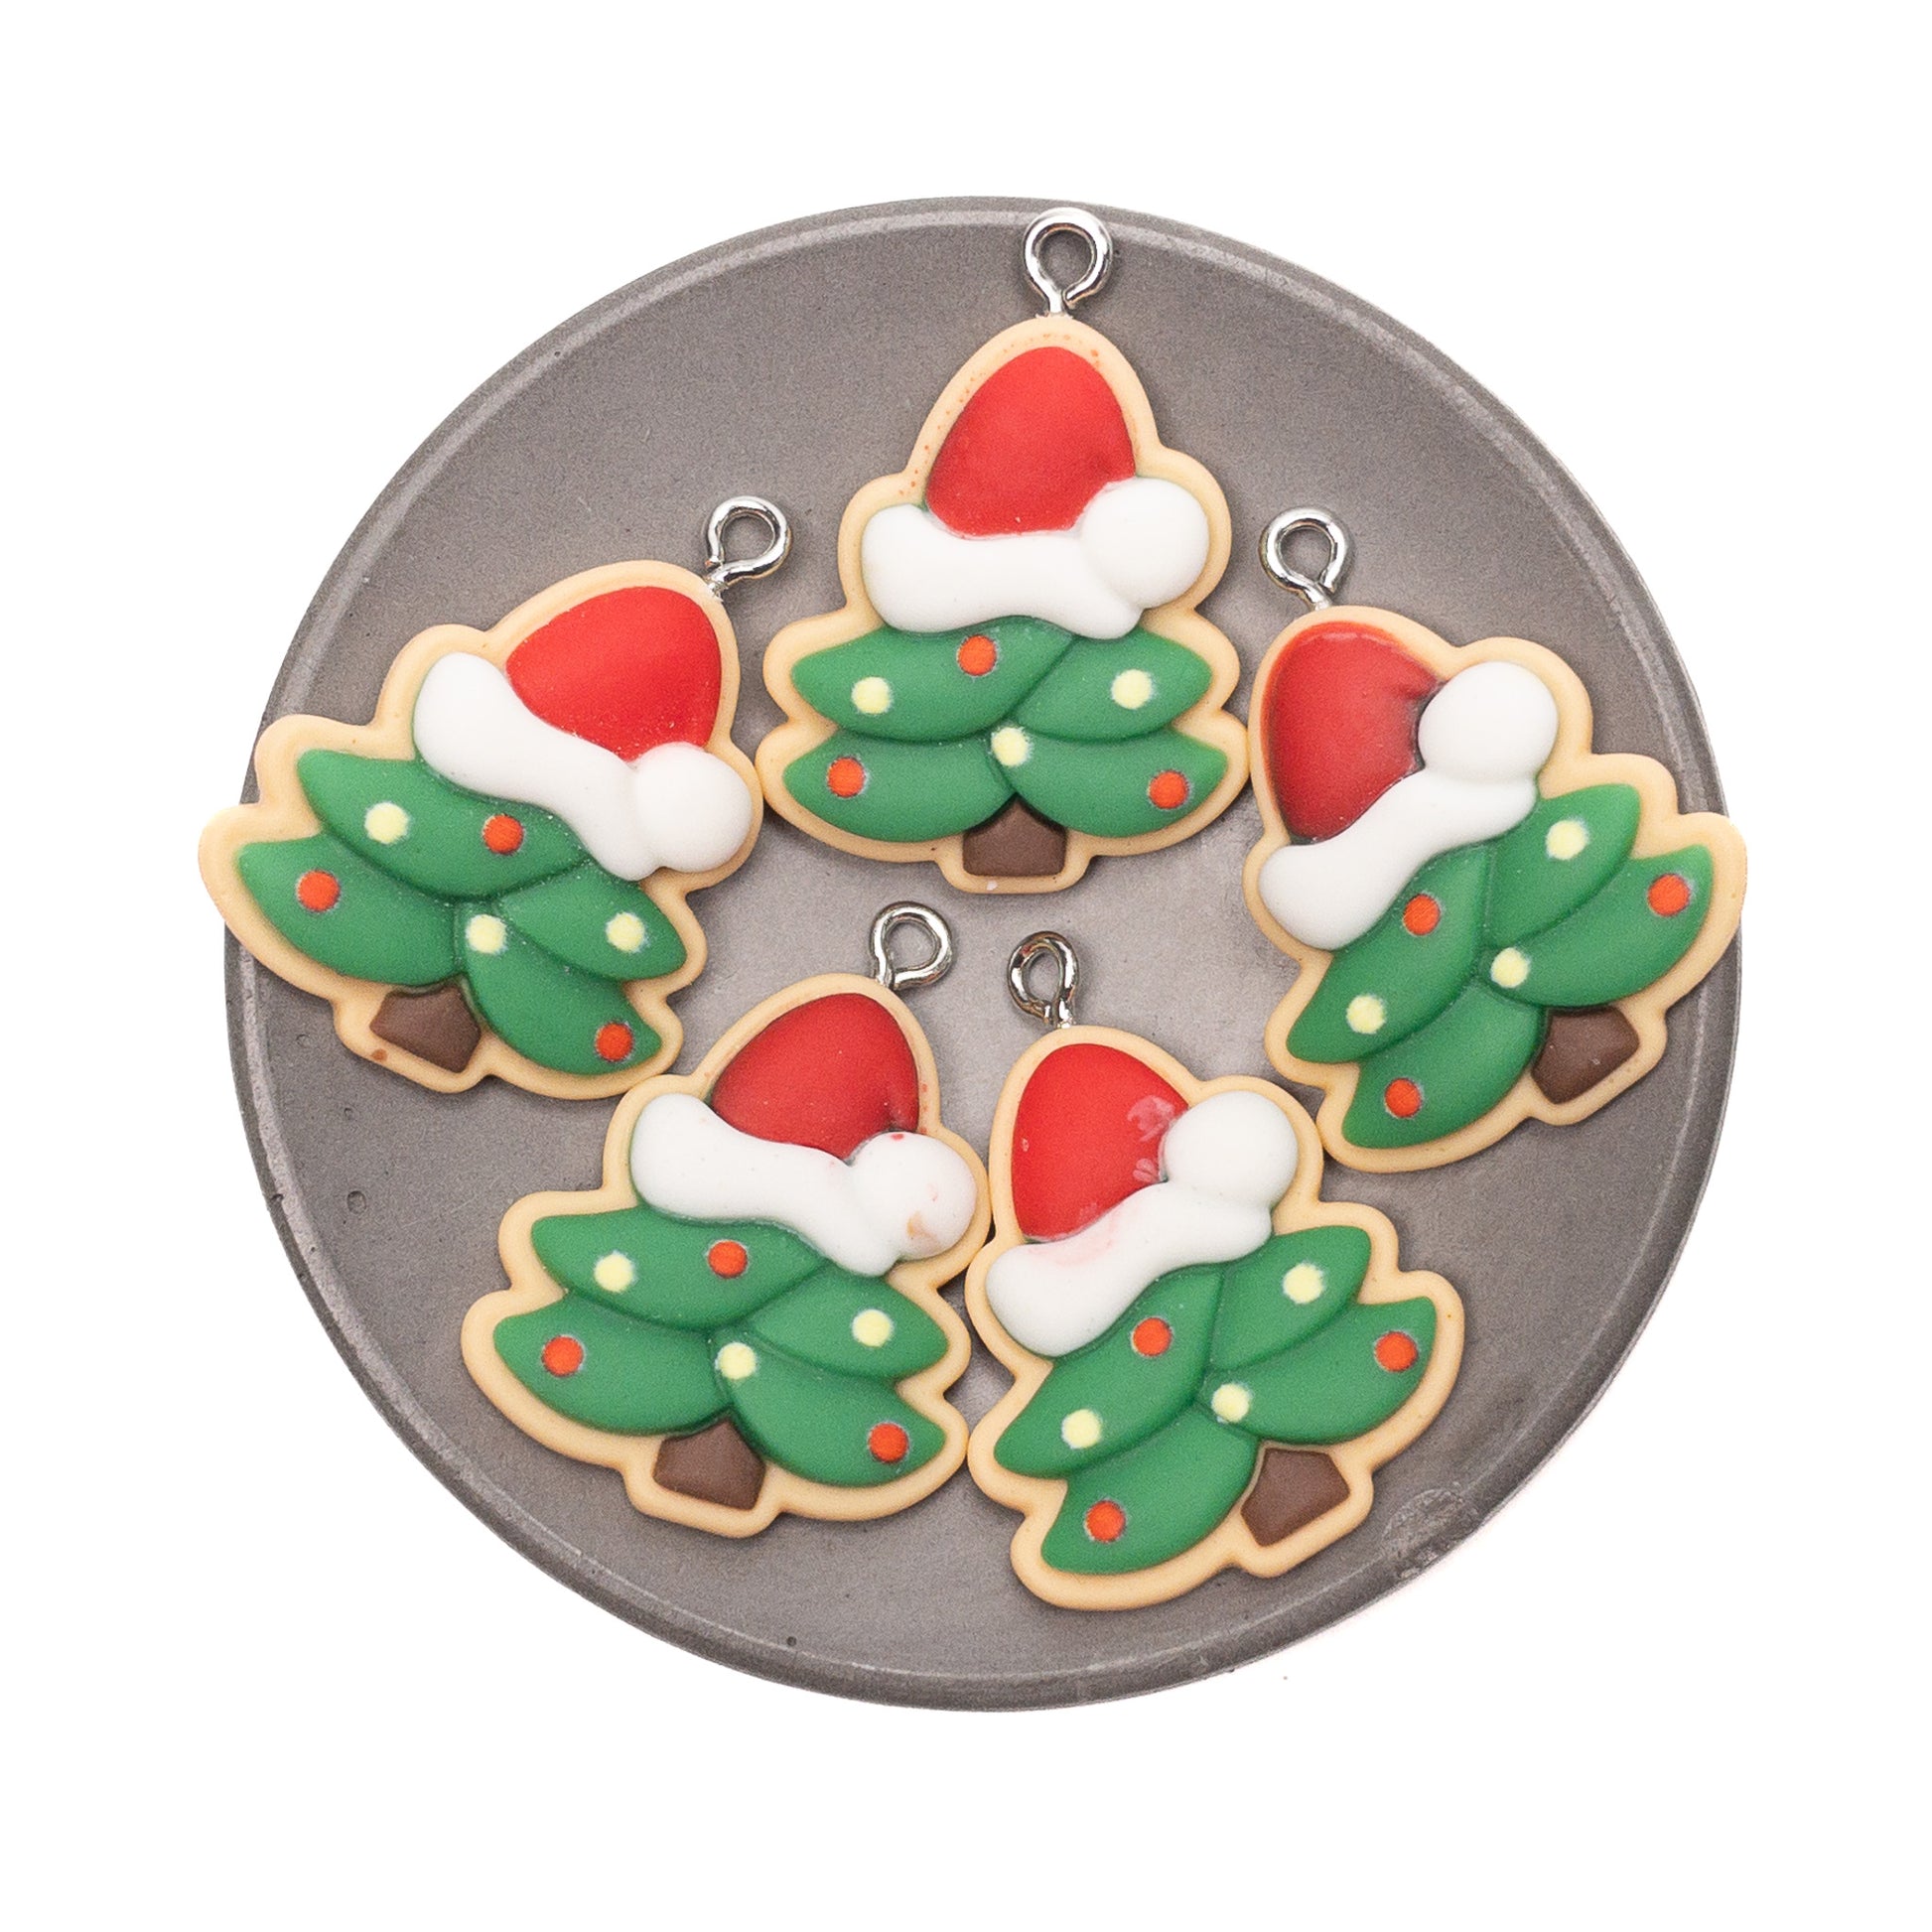 Resin Sugar Cookie Christmas Tree Charm - 5 pcs.